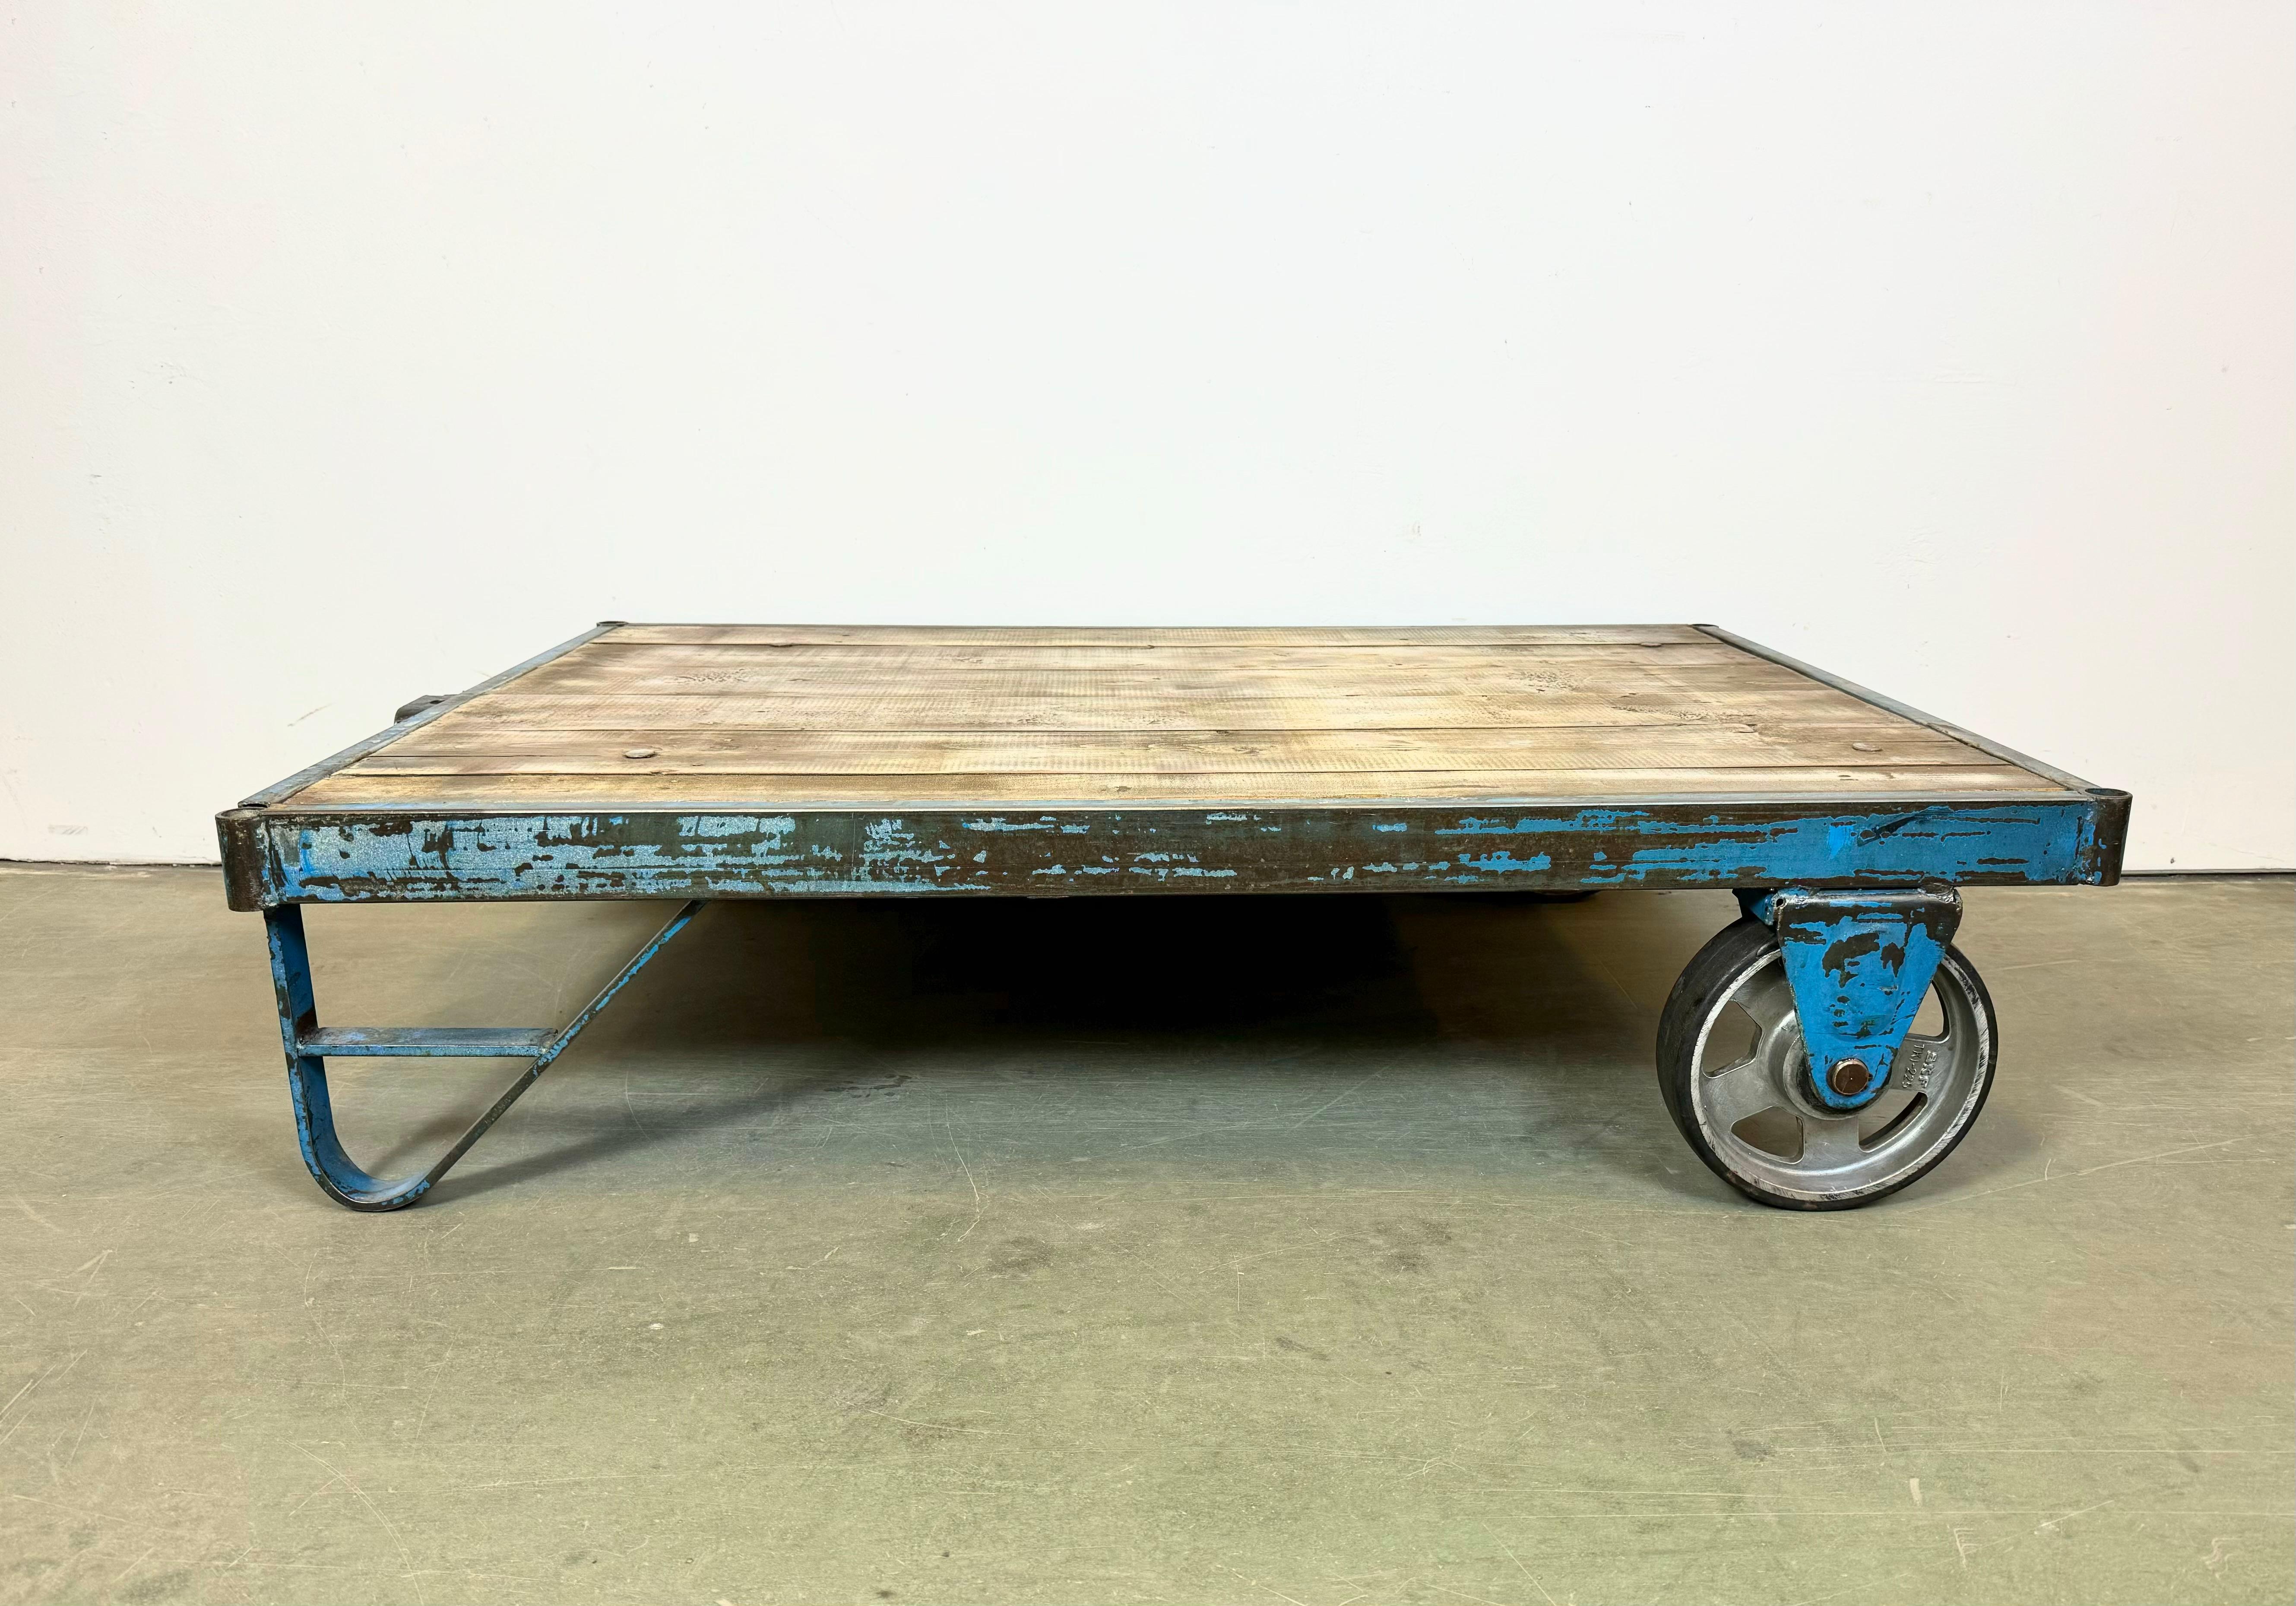 Un ancien transpalette provenant d'une usine sert désormais de table basse. Il est construit en fer bleu avec deux roues d'origine et une plaque en bois massif. Le poids de la table est de 40 kg.